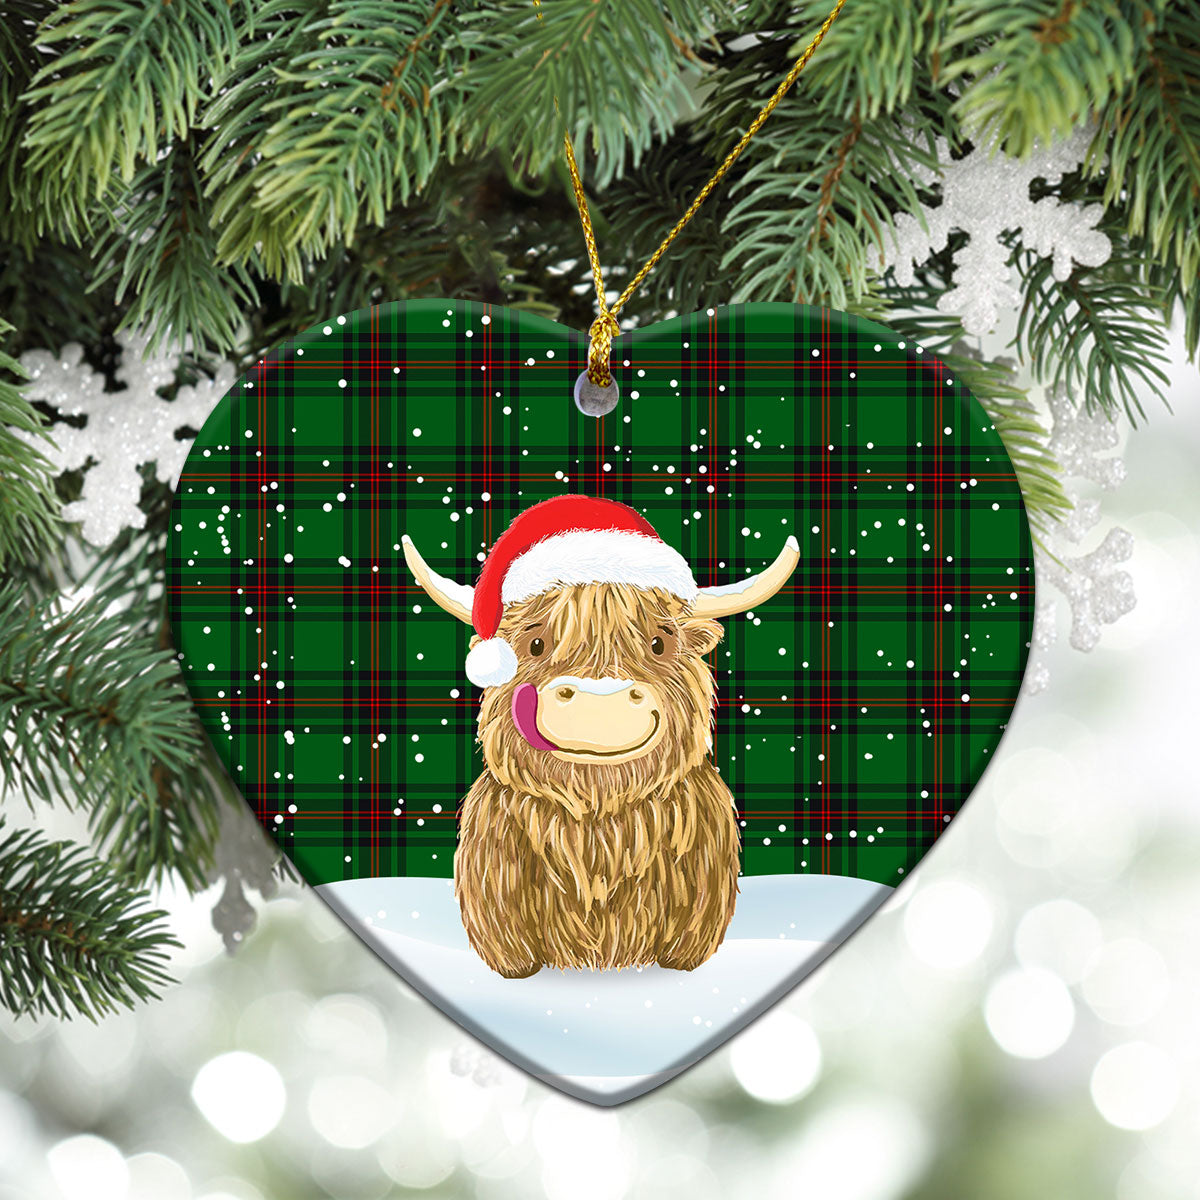 Kinnear Tartan Christmas Ceramic Ornament - Highland Cows Style